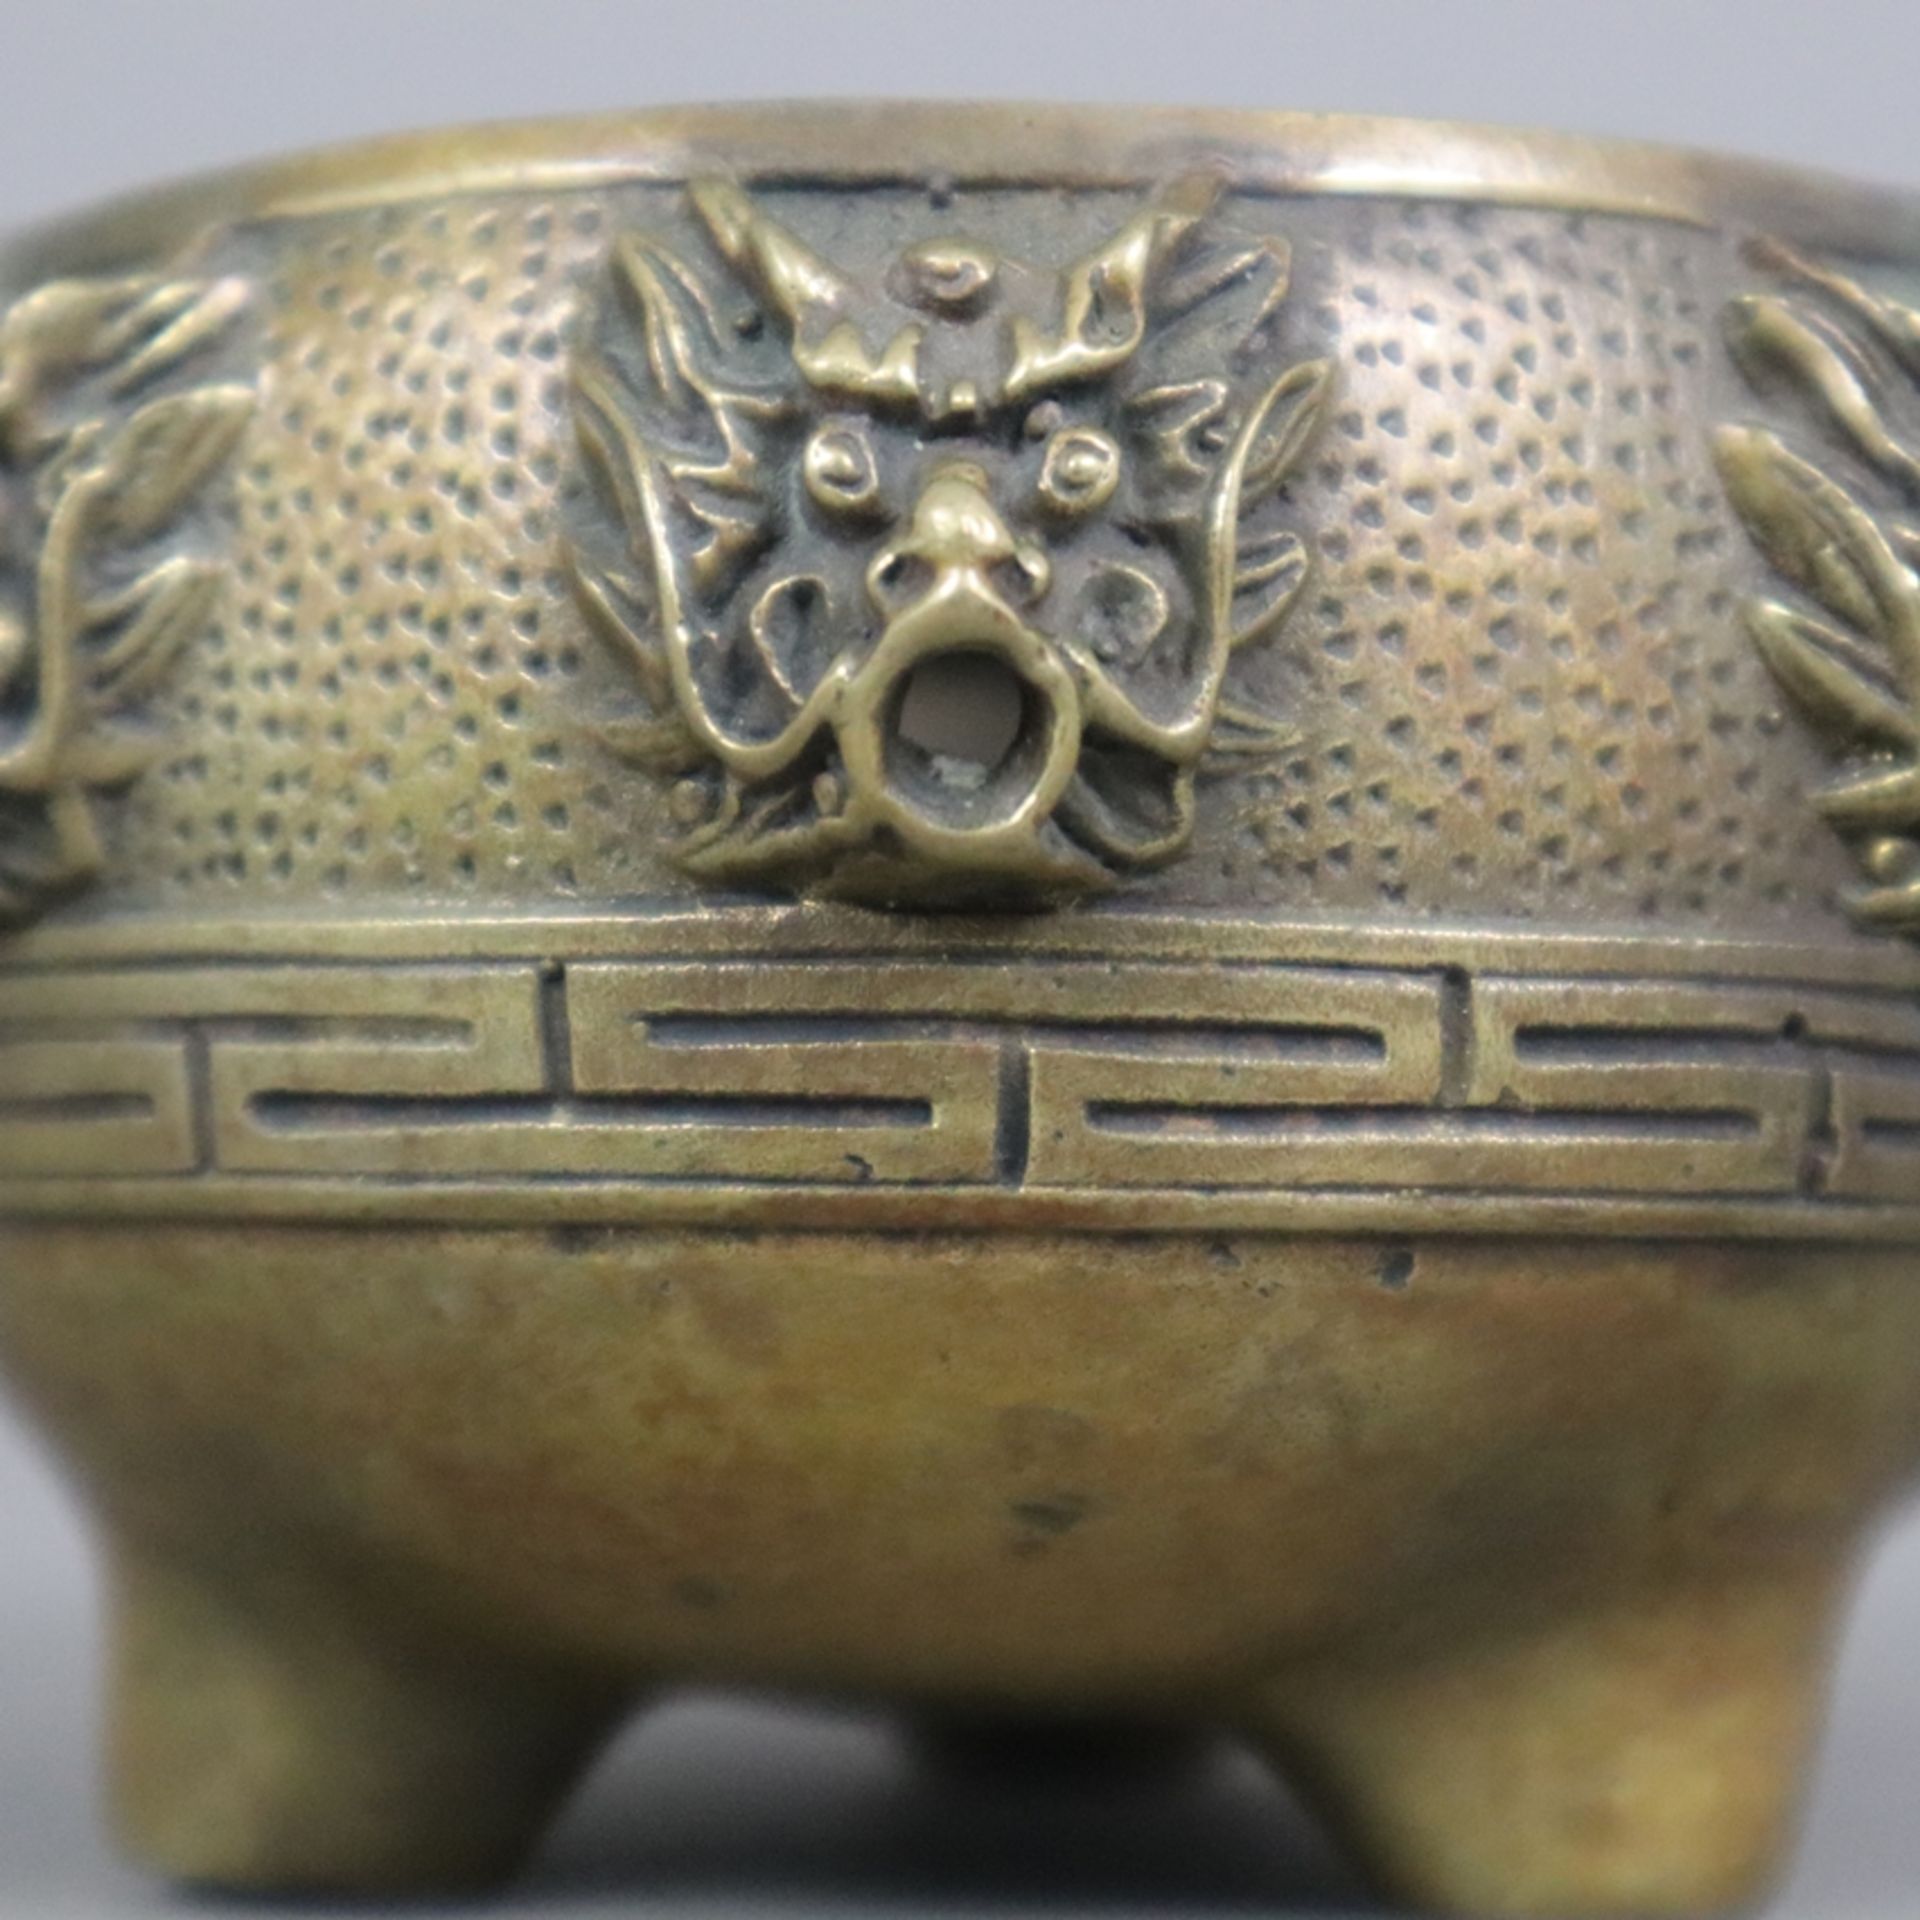 Zwei Weihrauchbrenner - China, Gelbbronze, runde Formen auf drei Stumpenfüßen, als Dekor umlaufend  - Bild 10 aus 11